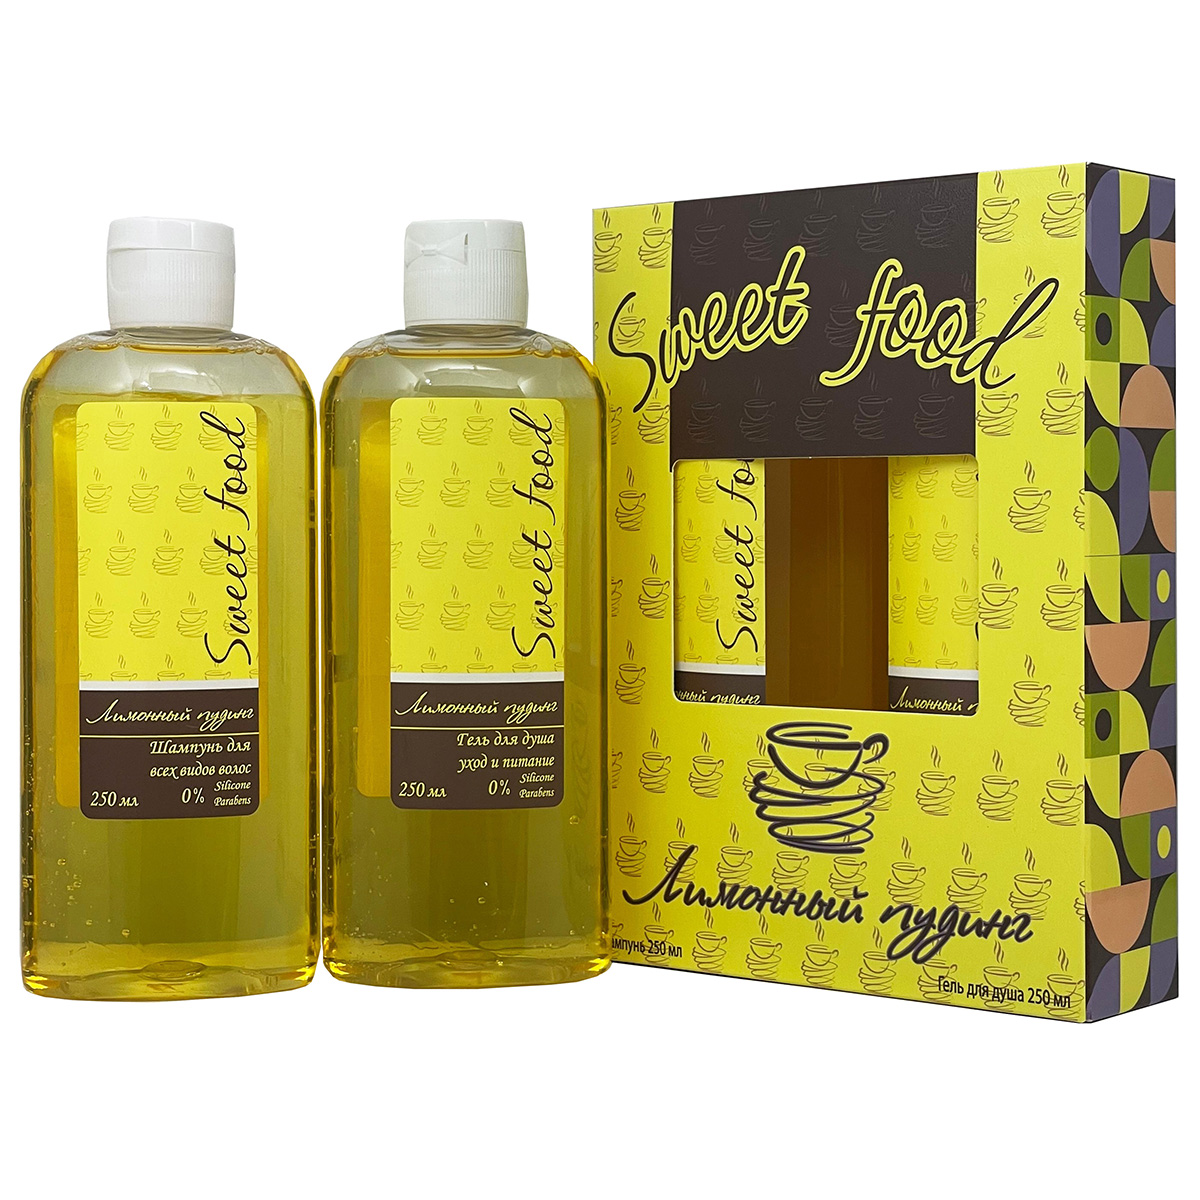 Подарочный набор Festiva Лимонный пудинг шампунь для волос 250мл гель для душа 250мл текстурирующий пудинг для укладки волос экстра сильной фиксации pudding creator